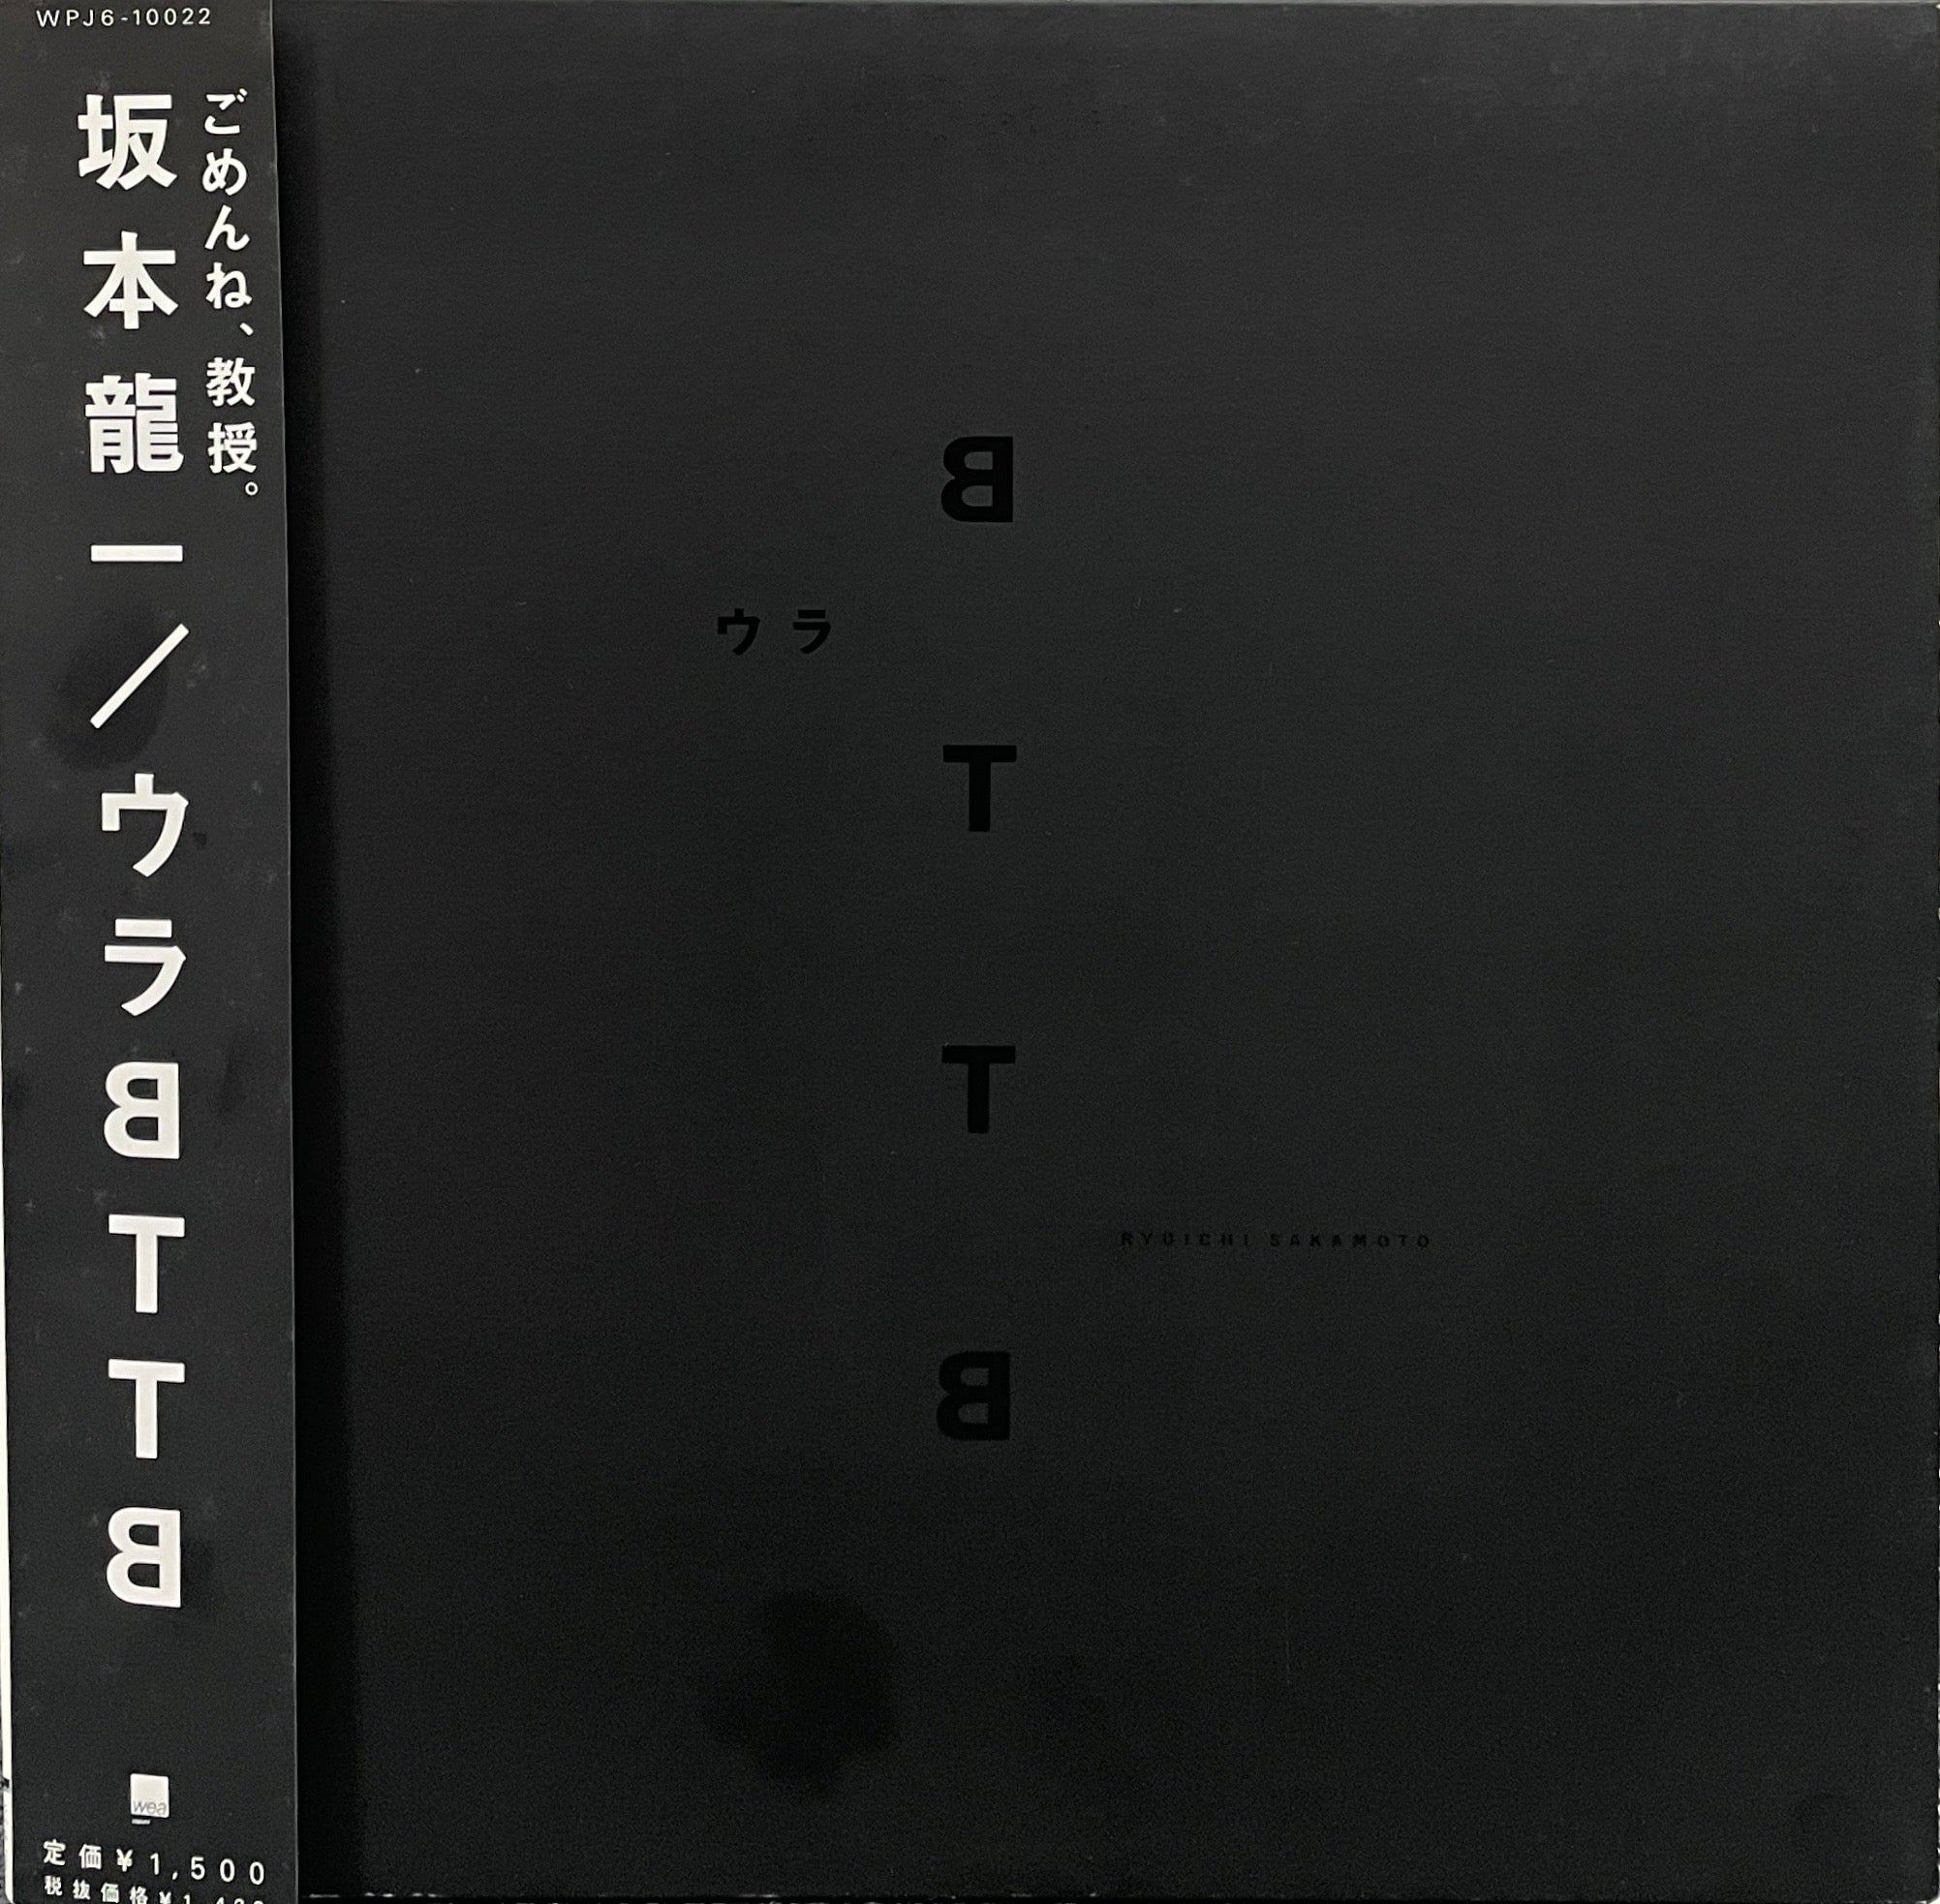 坂本龍一 (RYUICHI SAKAMOTO) / ウラ BTTB ( WEA Japan, WPJ6-10022, EP)帯付